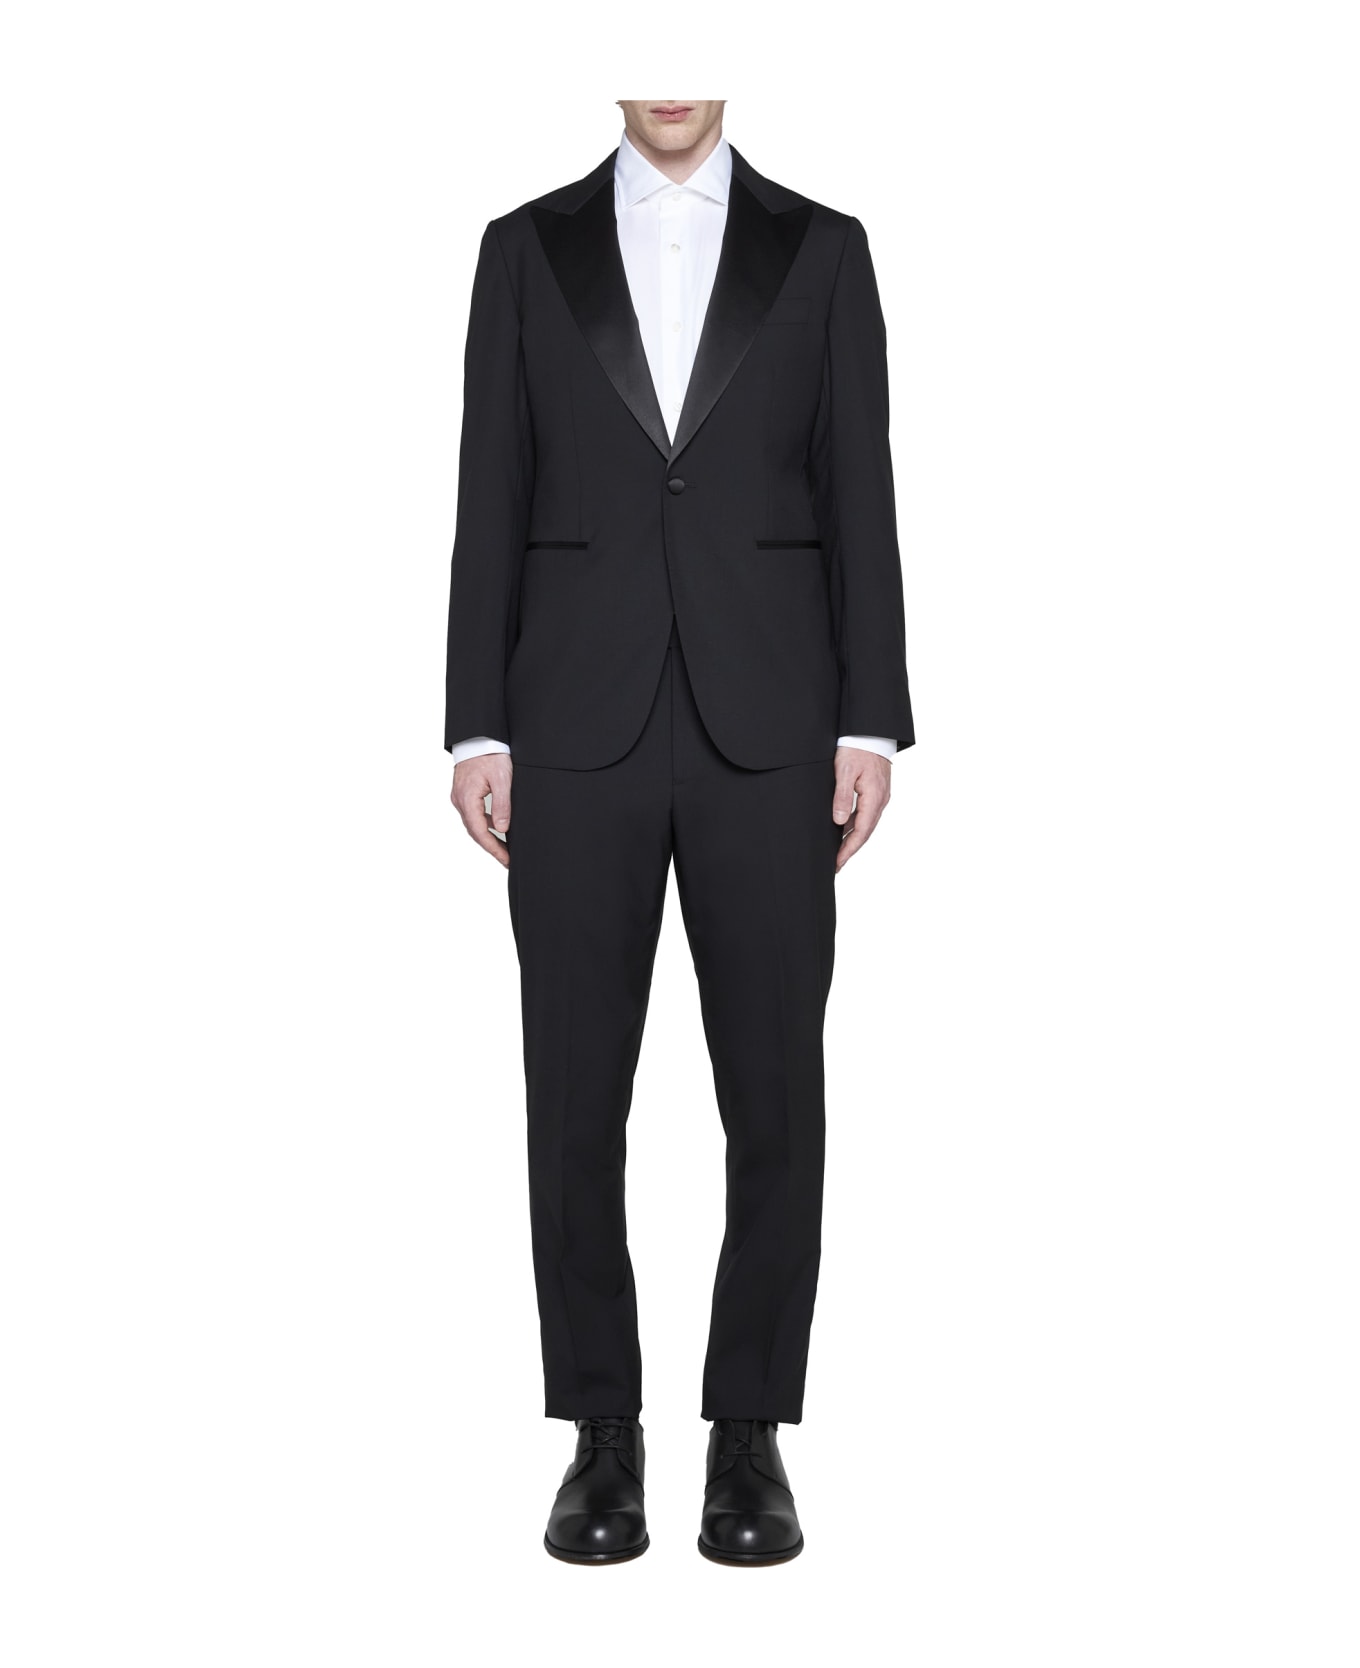 Low Brand Suit - Jet black